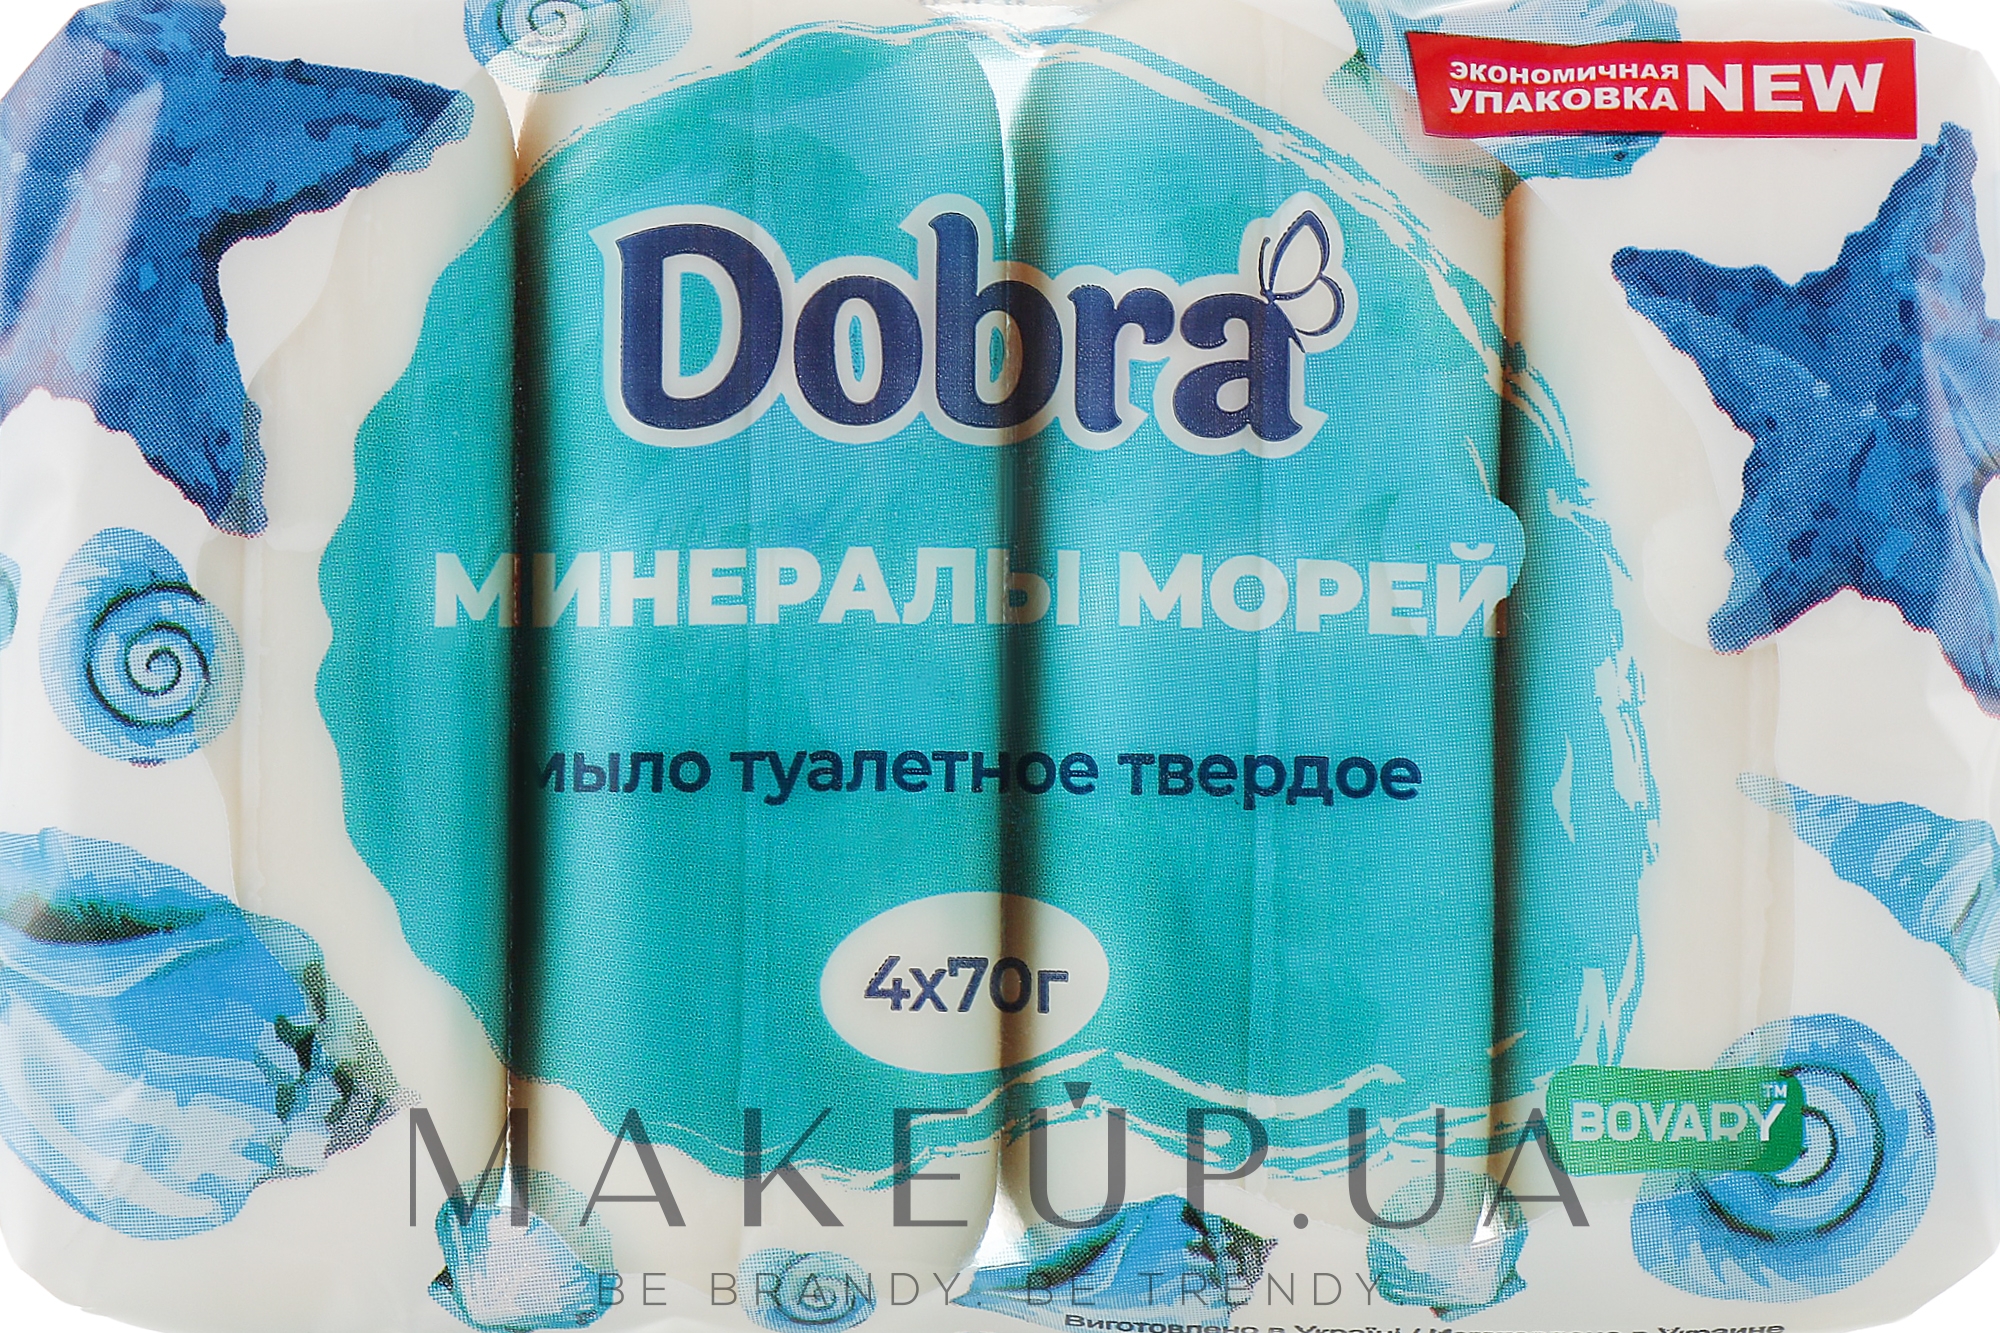 Мыло туалетное "Минералы морей" - Мыловаренные традиции Dobra Bovary — фото 4x70g